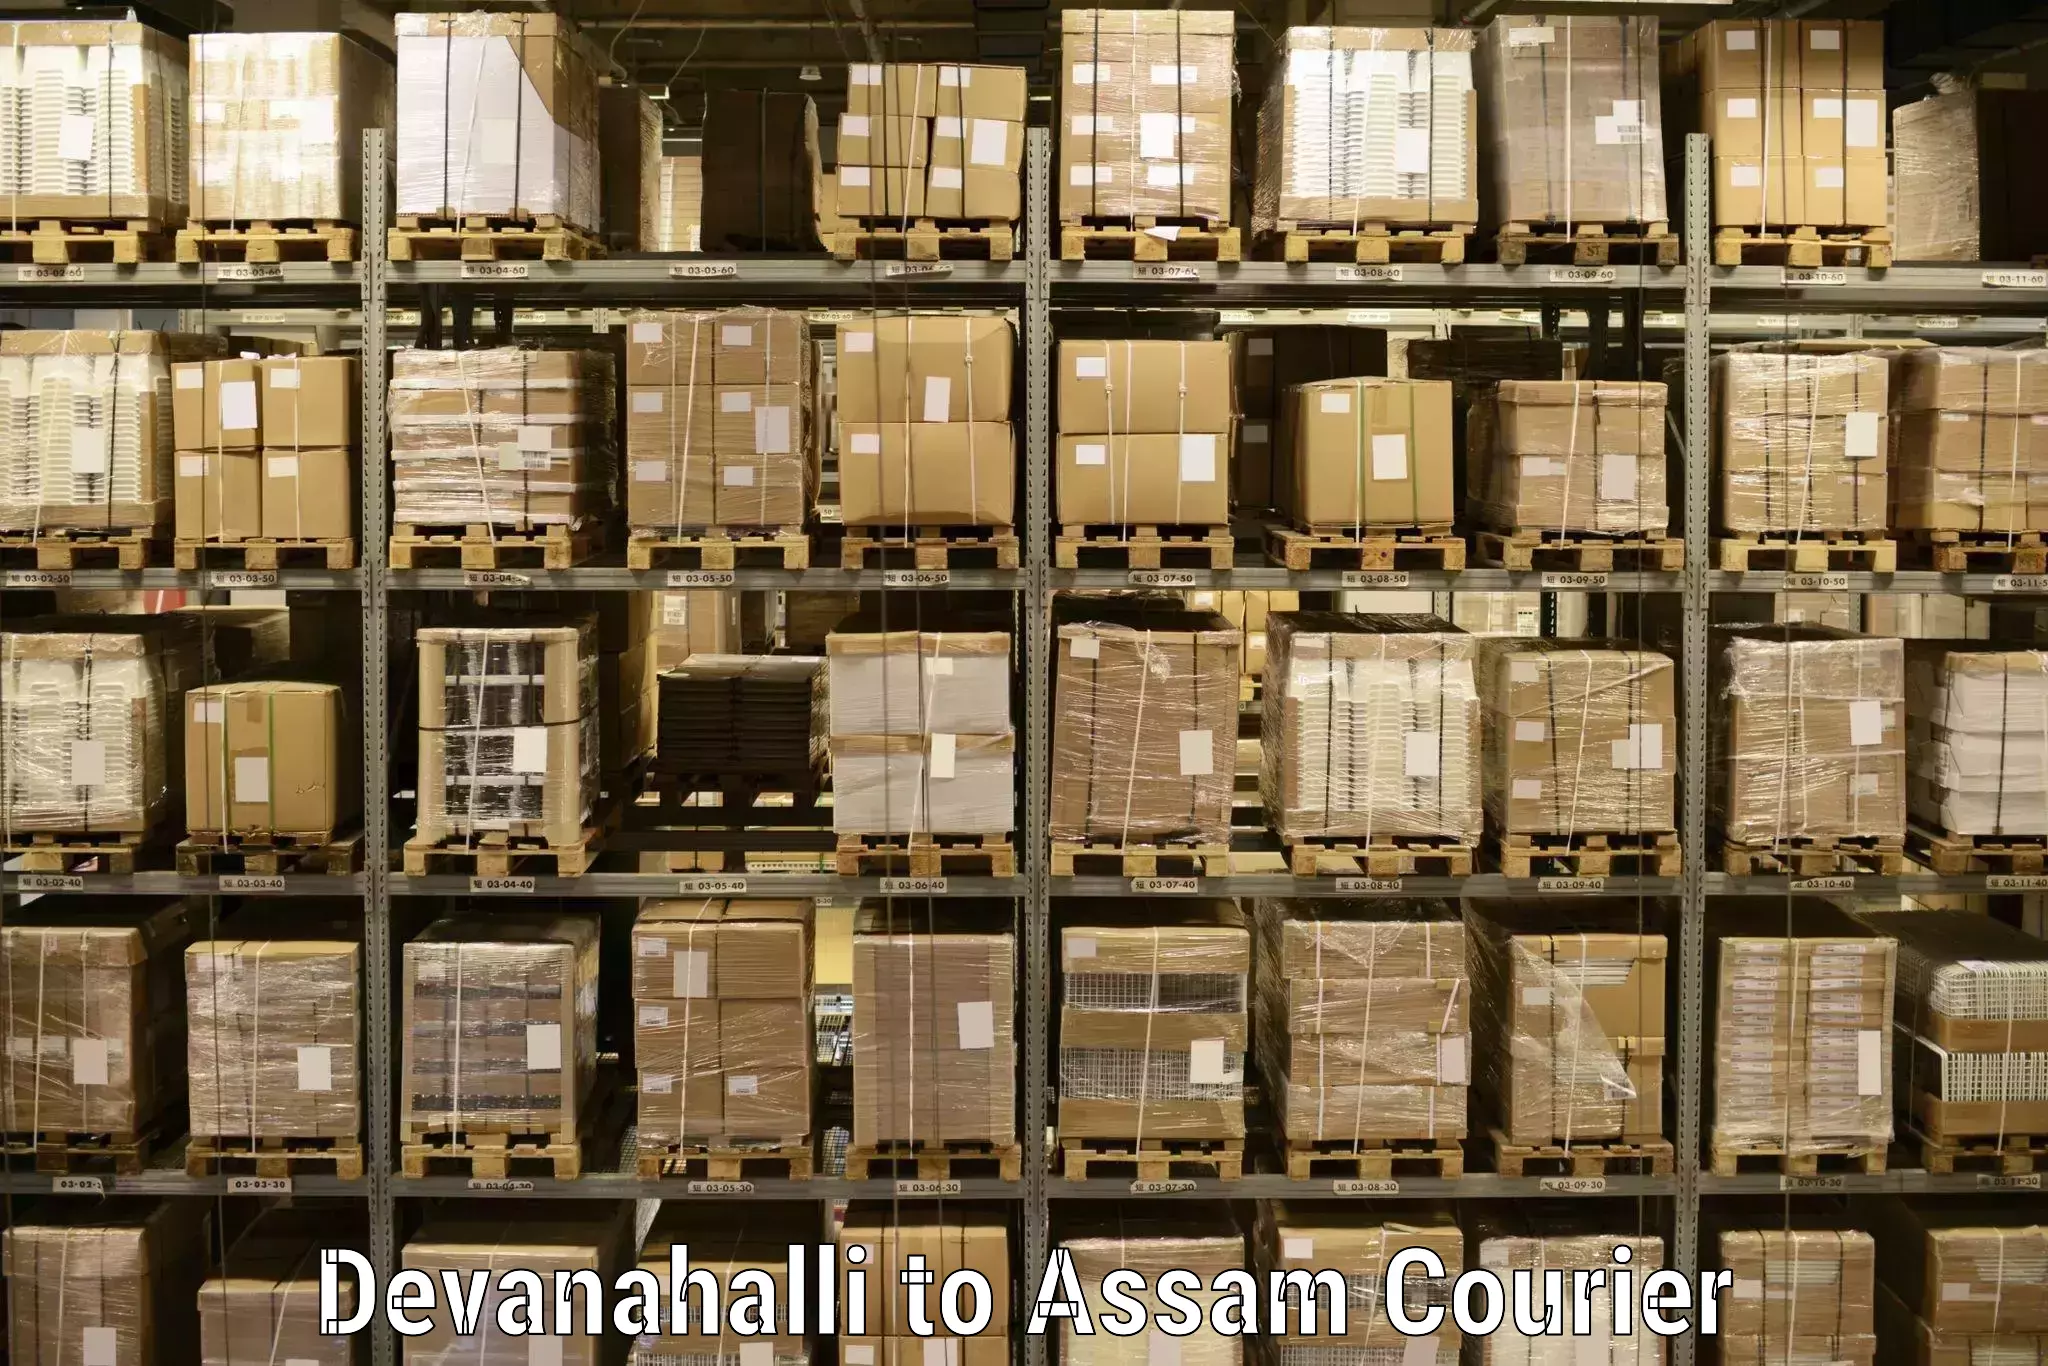 Next-day delivery options Devanahalli to Tinsukia